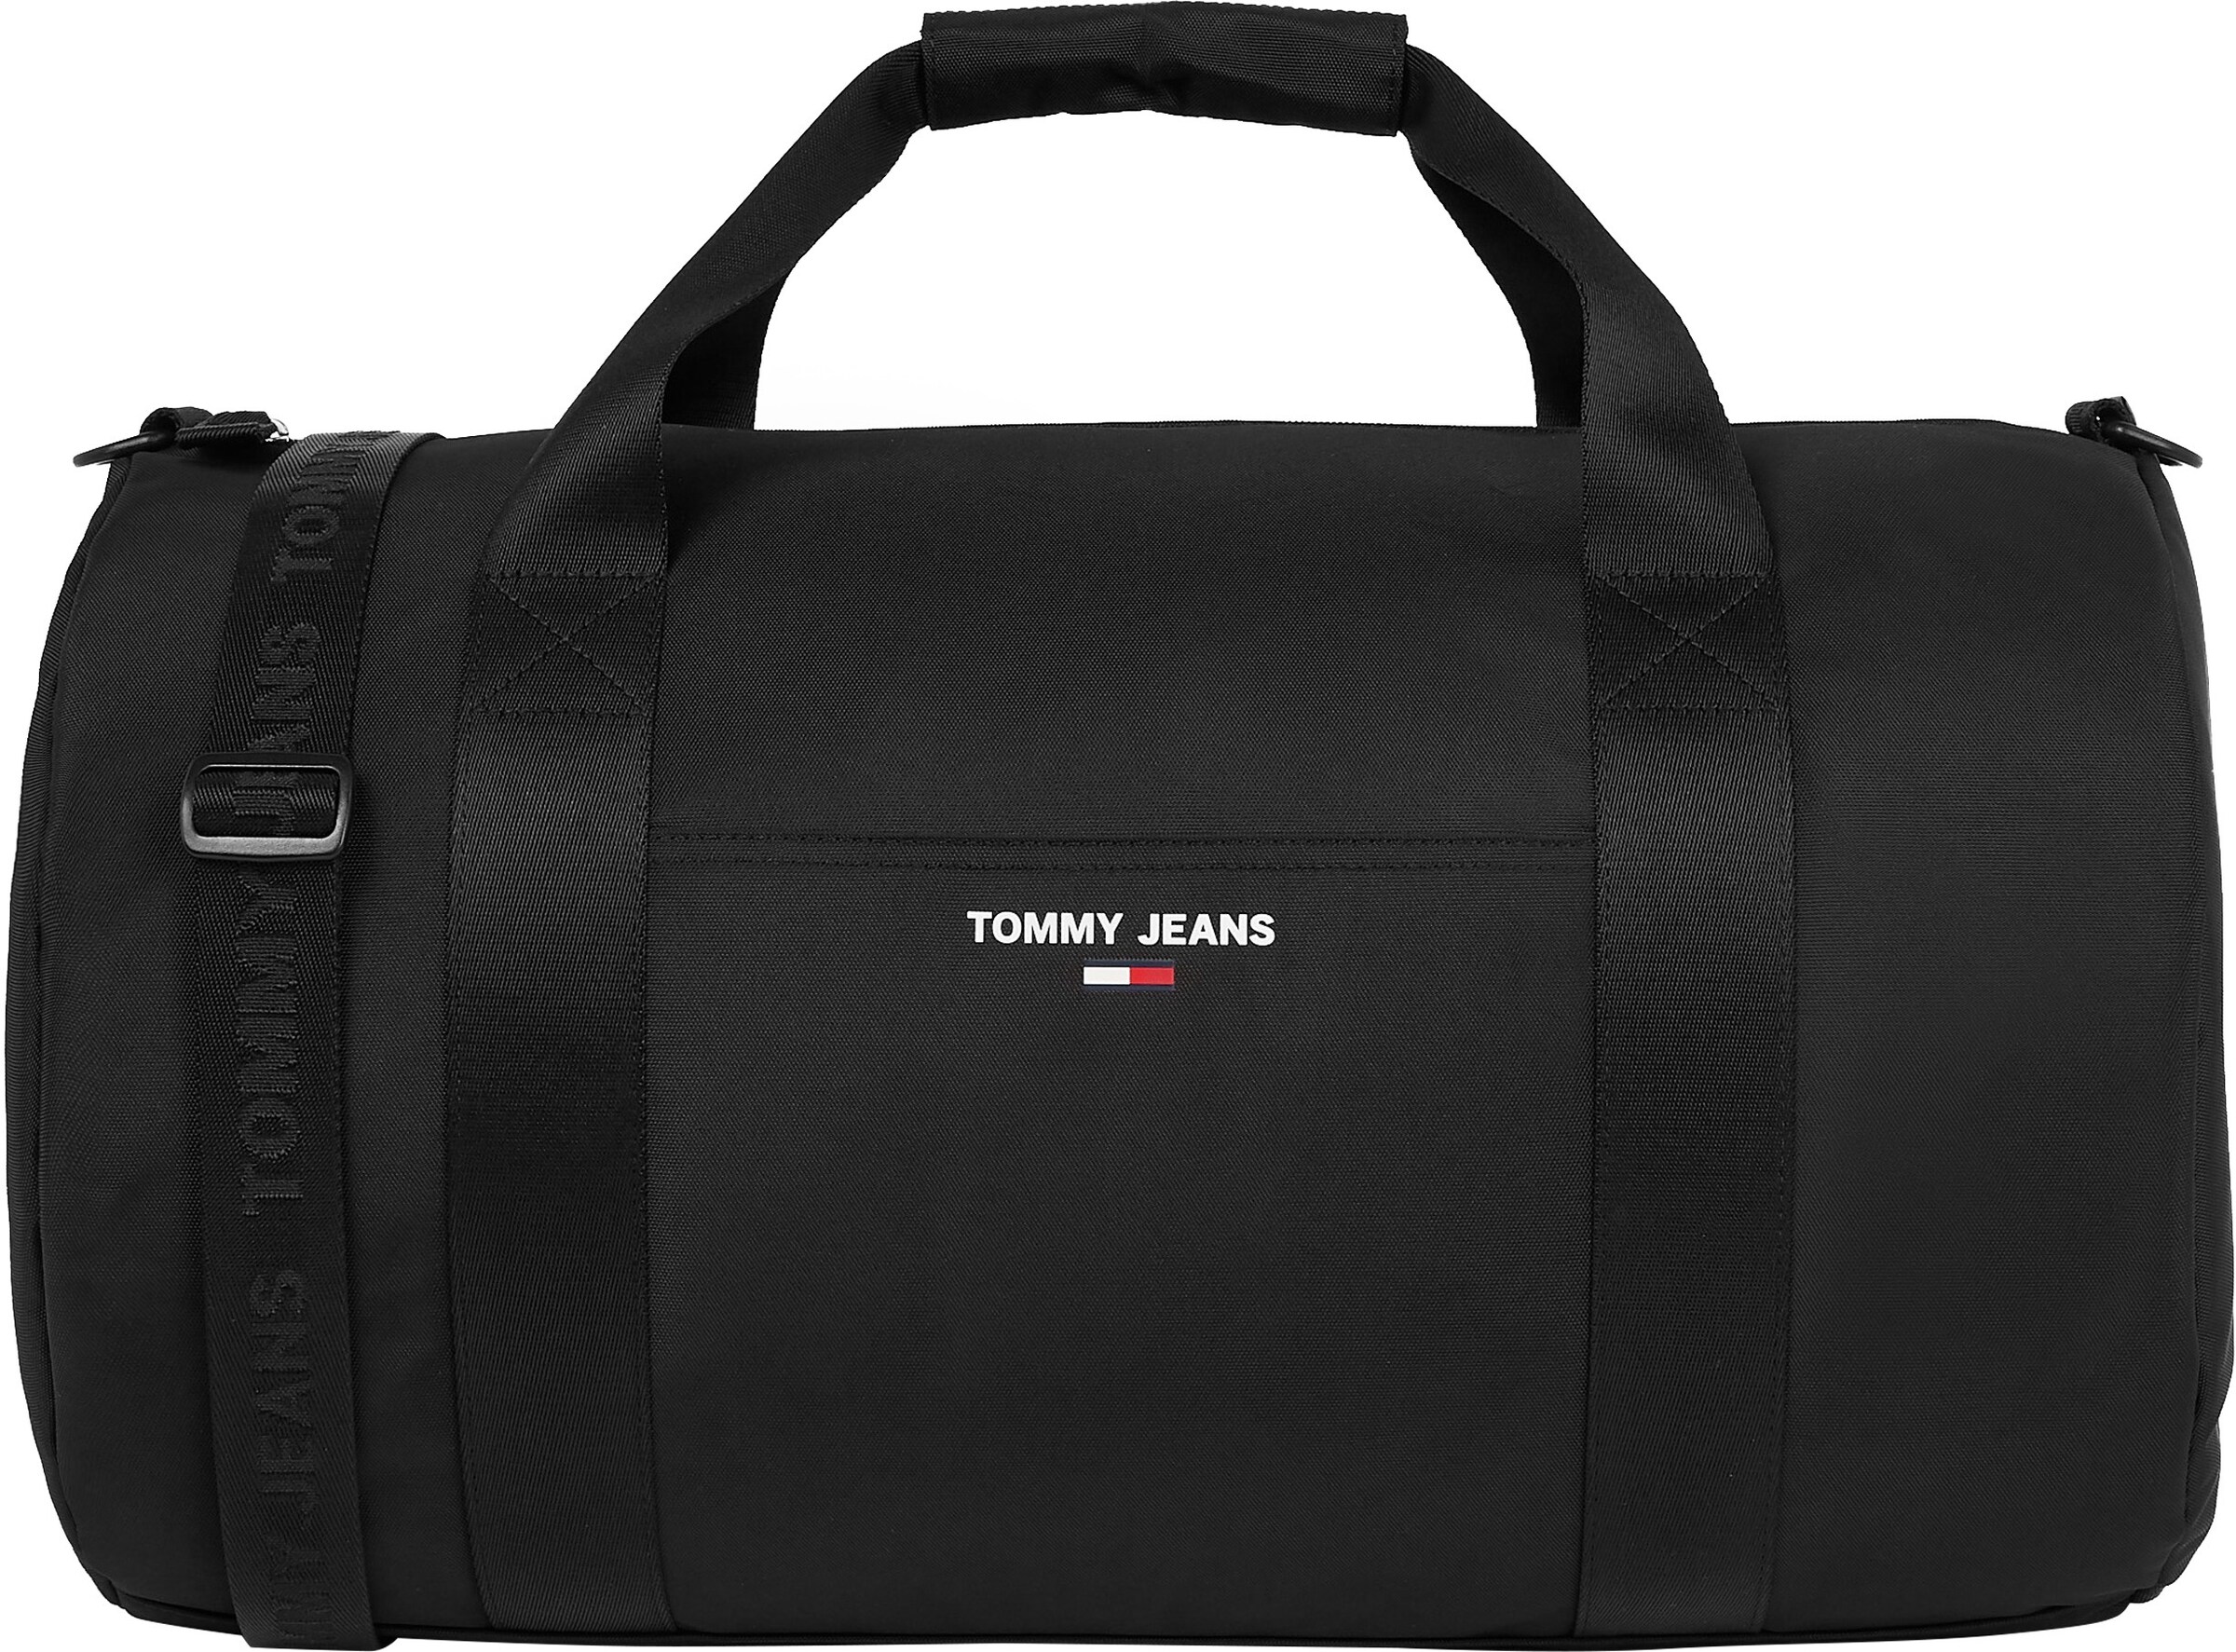 Women Bags & backpacks | Tommy Jeans Weekender in Black - TY00010